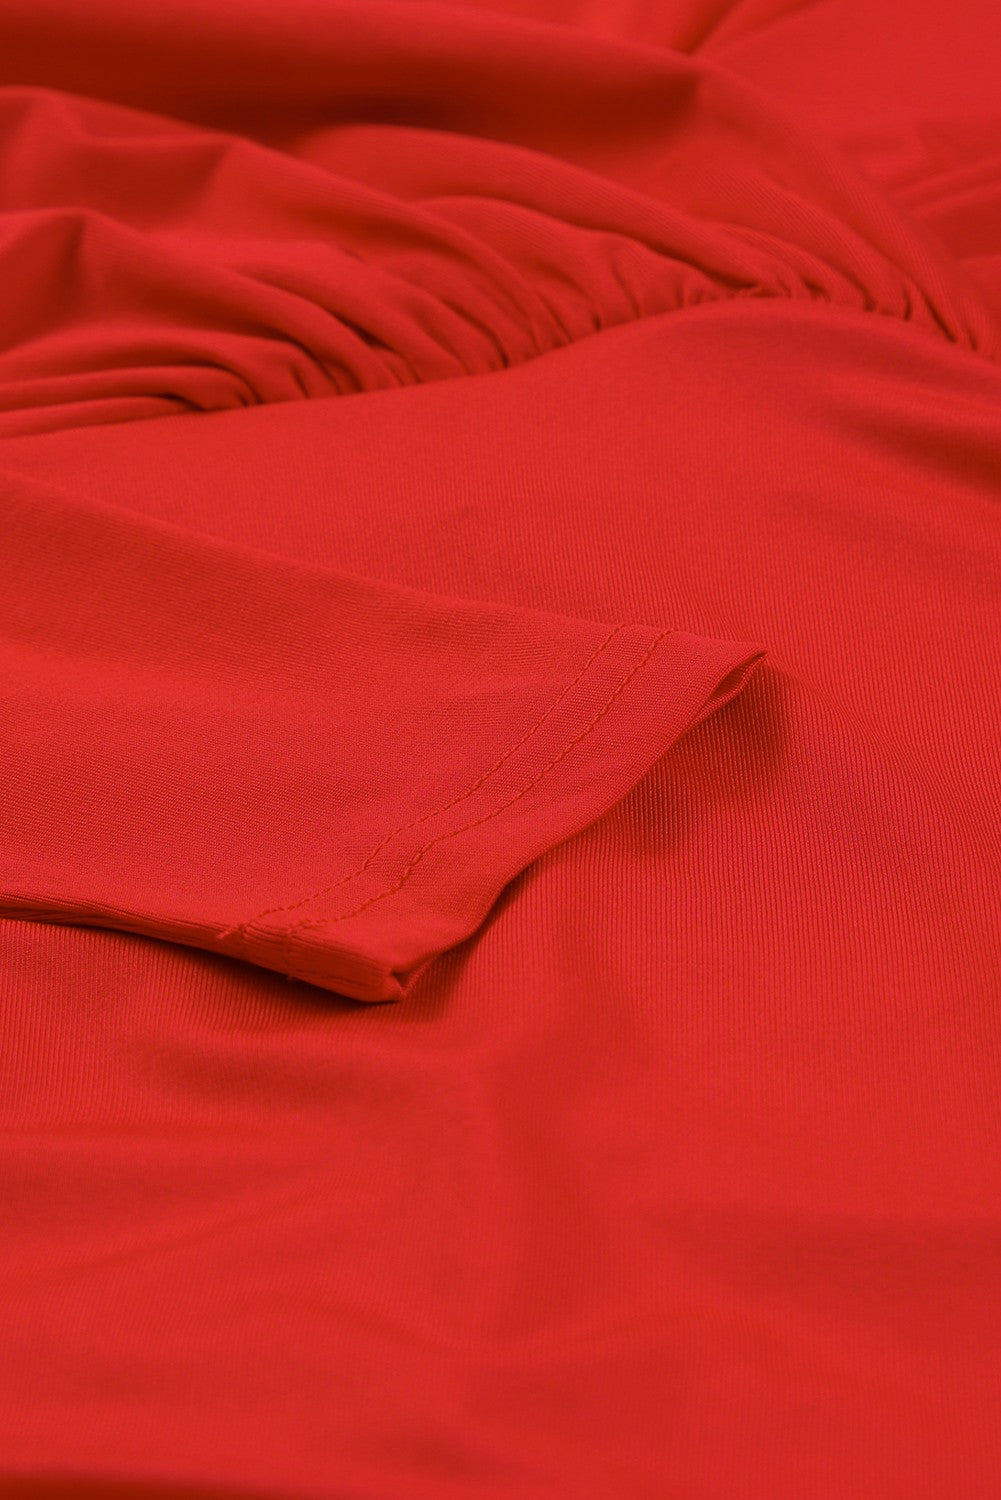 Ognjeno rdeča oprijeta obleka z dolgimi rokavi in ​​v-izrezom